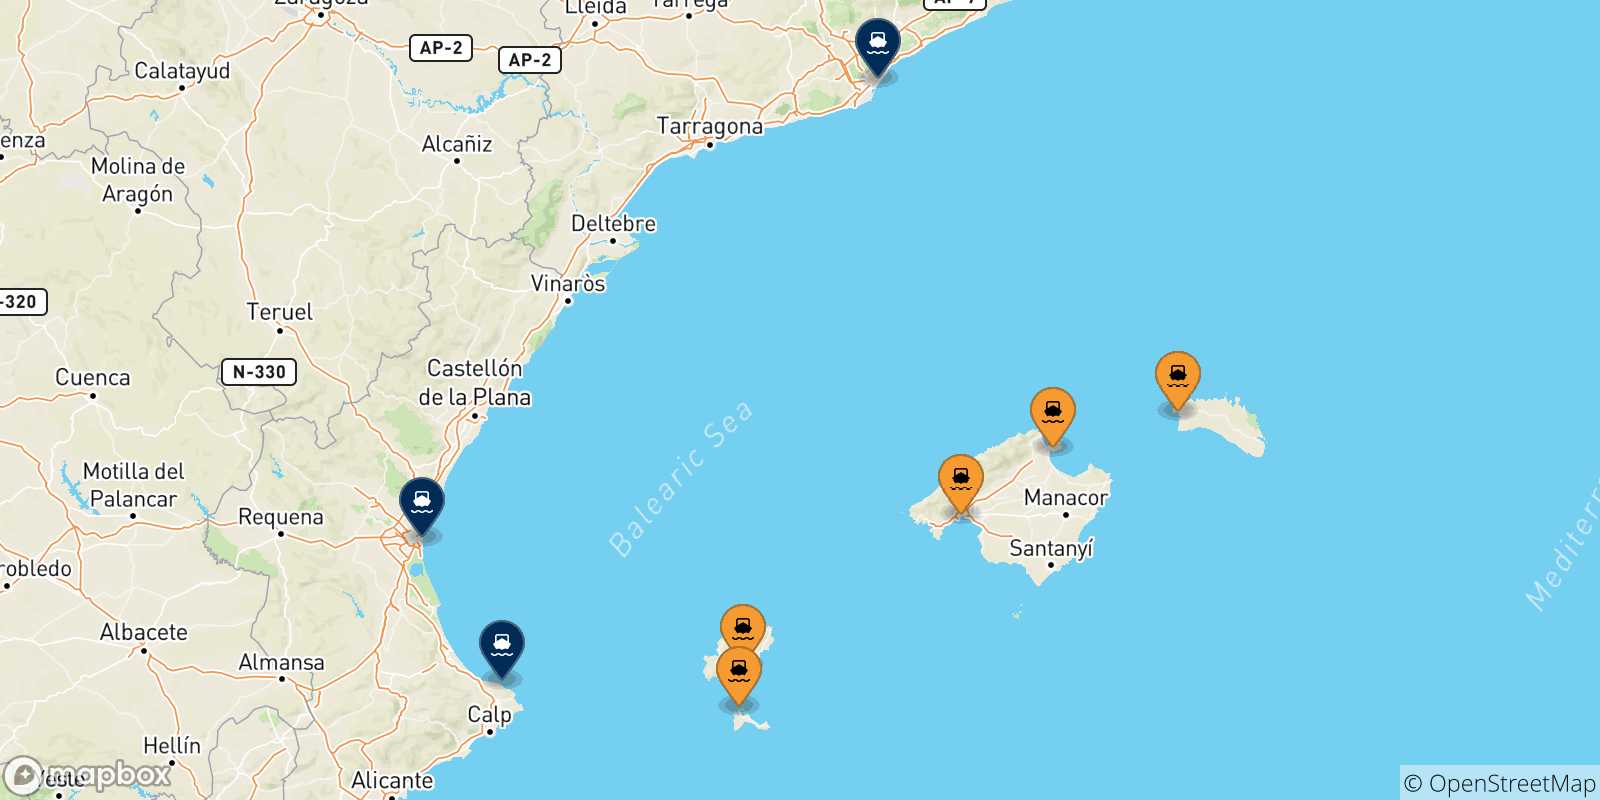 Mappa delle possibili rotte tra le Isole Baleari e la Spagna